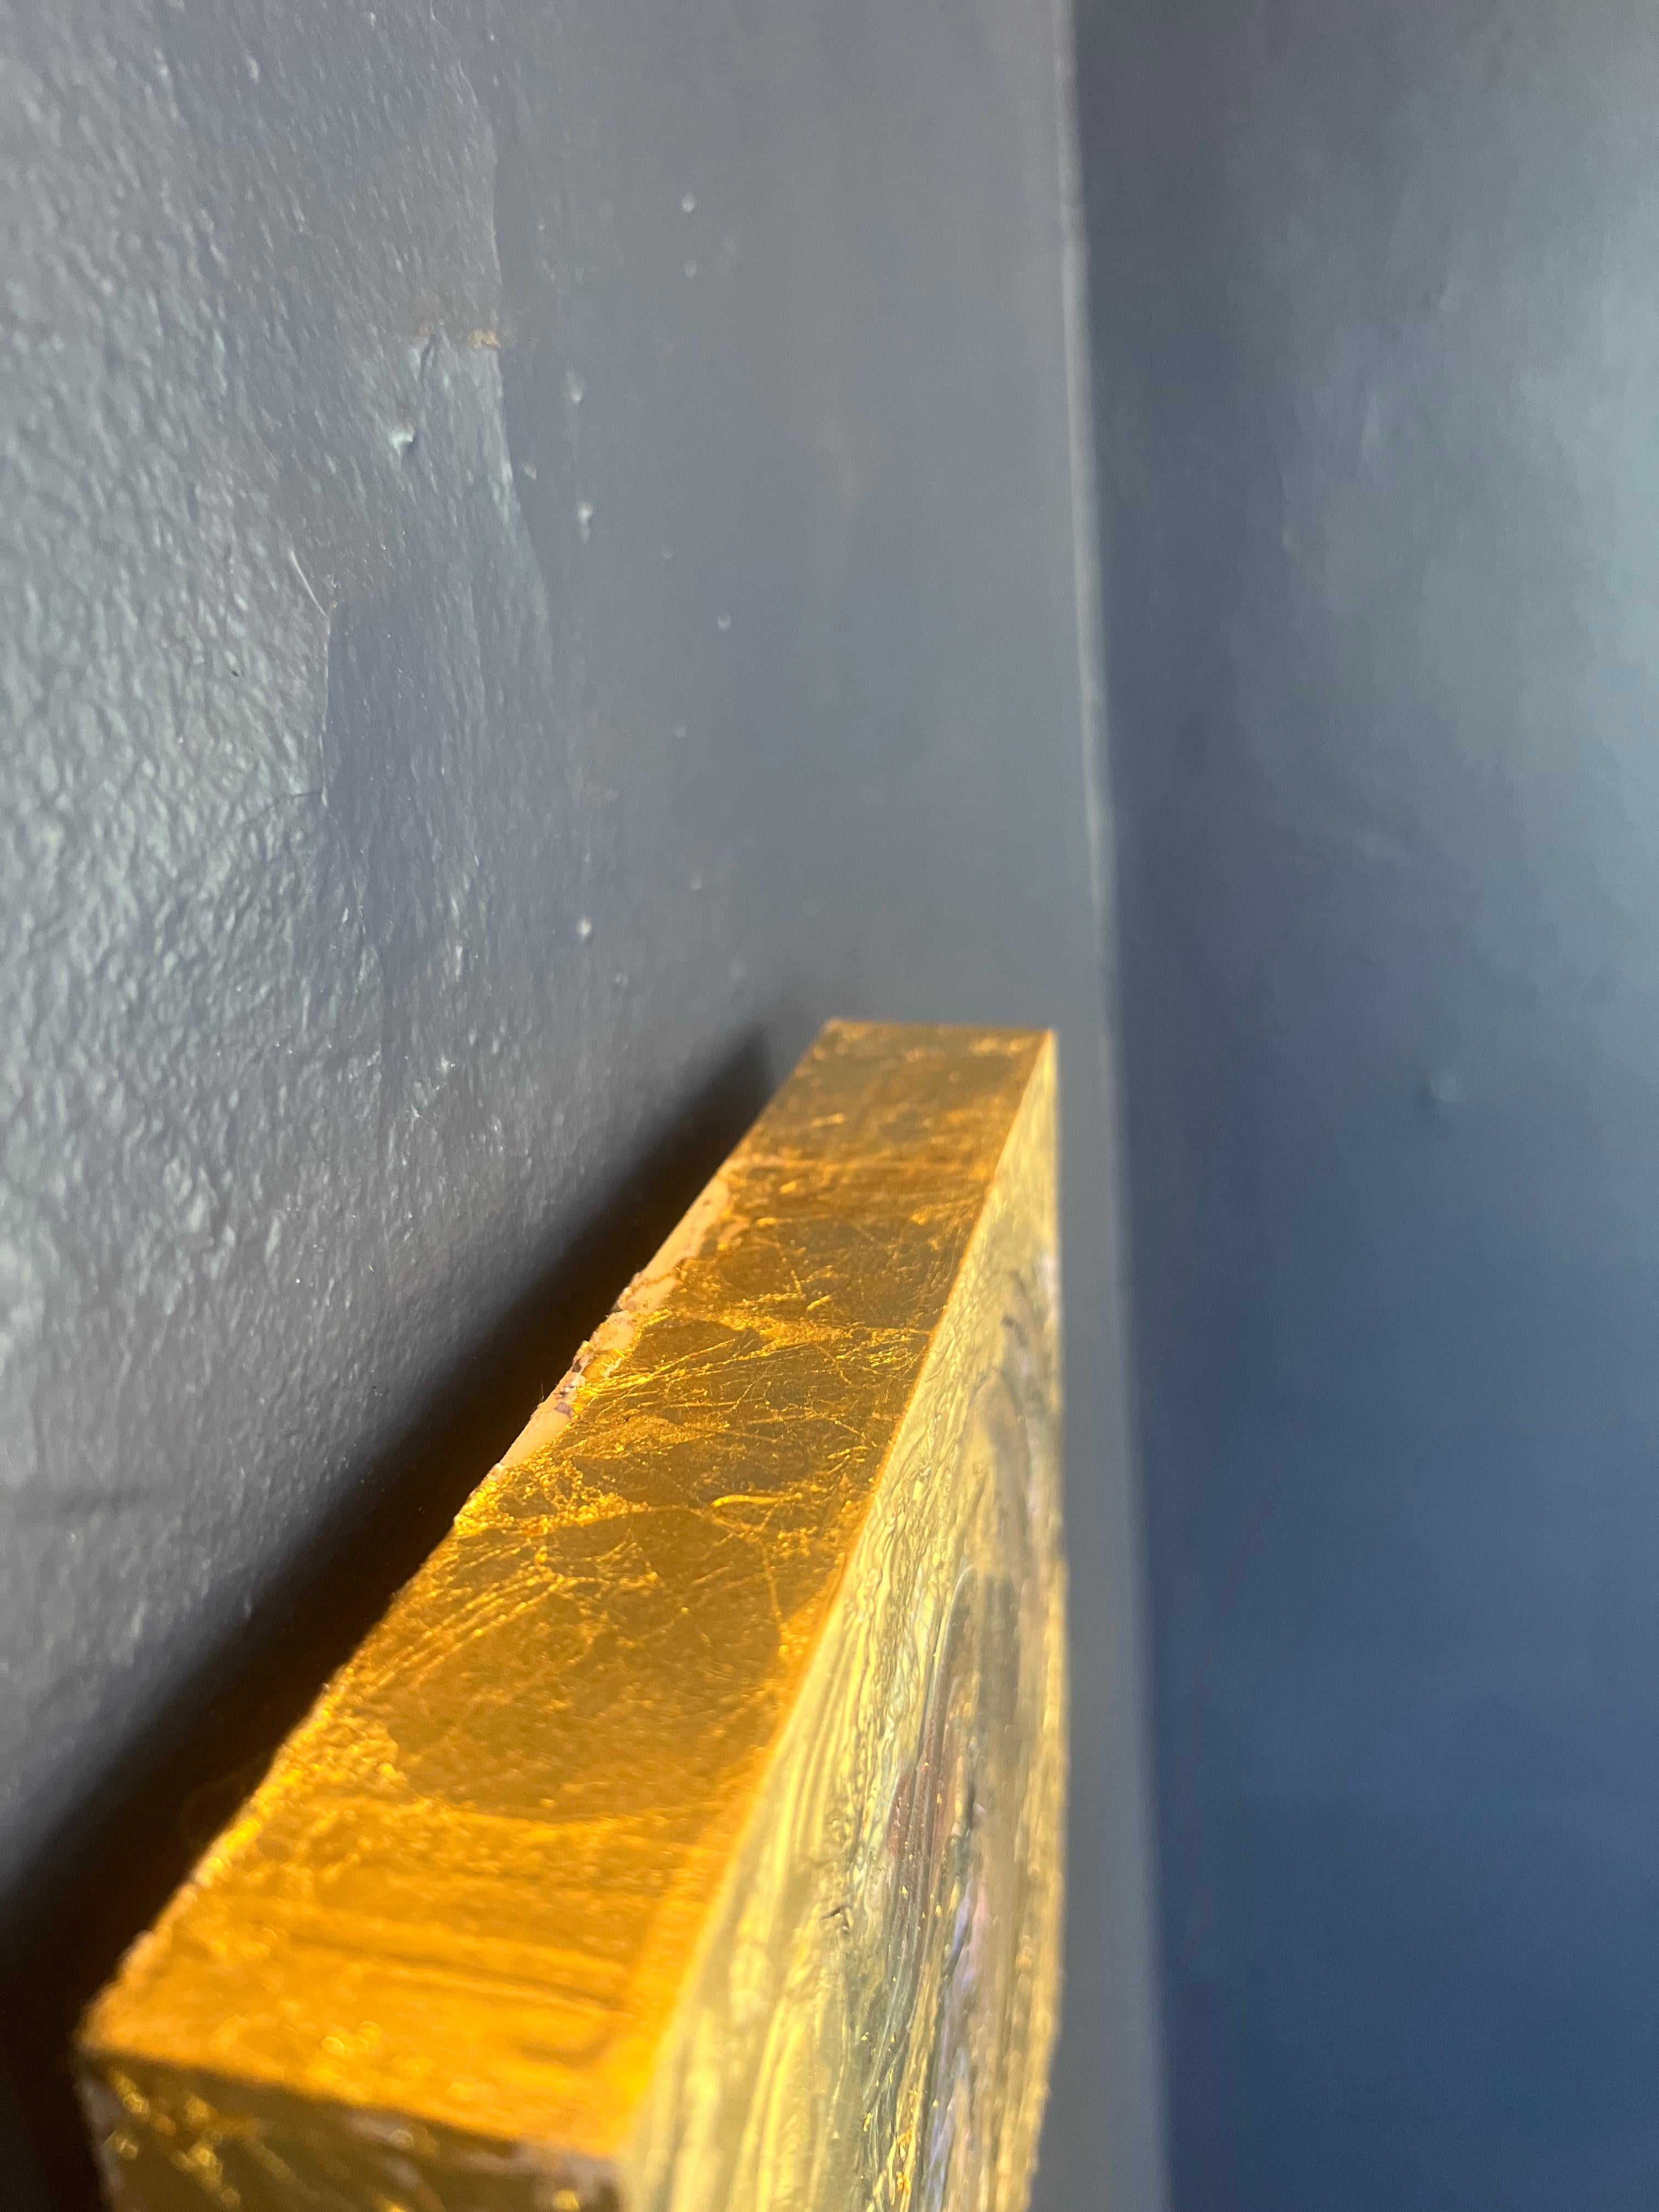 Pièce abstraite multicouche sur panneau de bois. Amrta utilise des feuilles d'or 24k sur les bords pour donner au collectionneur la possibilité de les accrocher directement au mur. 
Chaque pièce est méticuleusement superposée et unique en son genre.